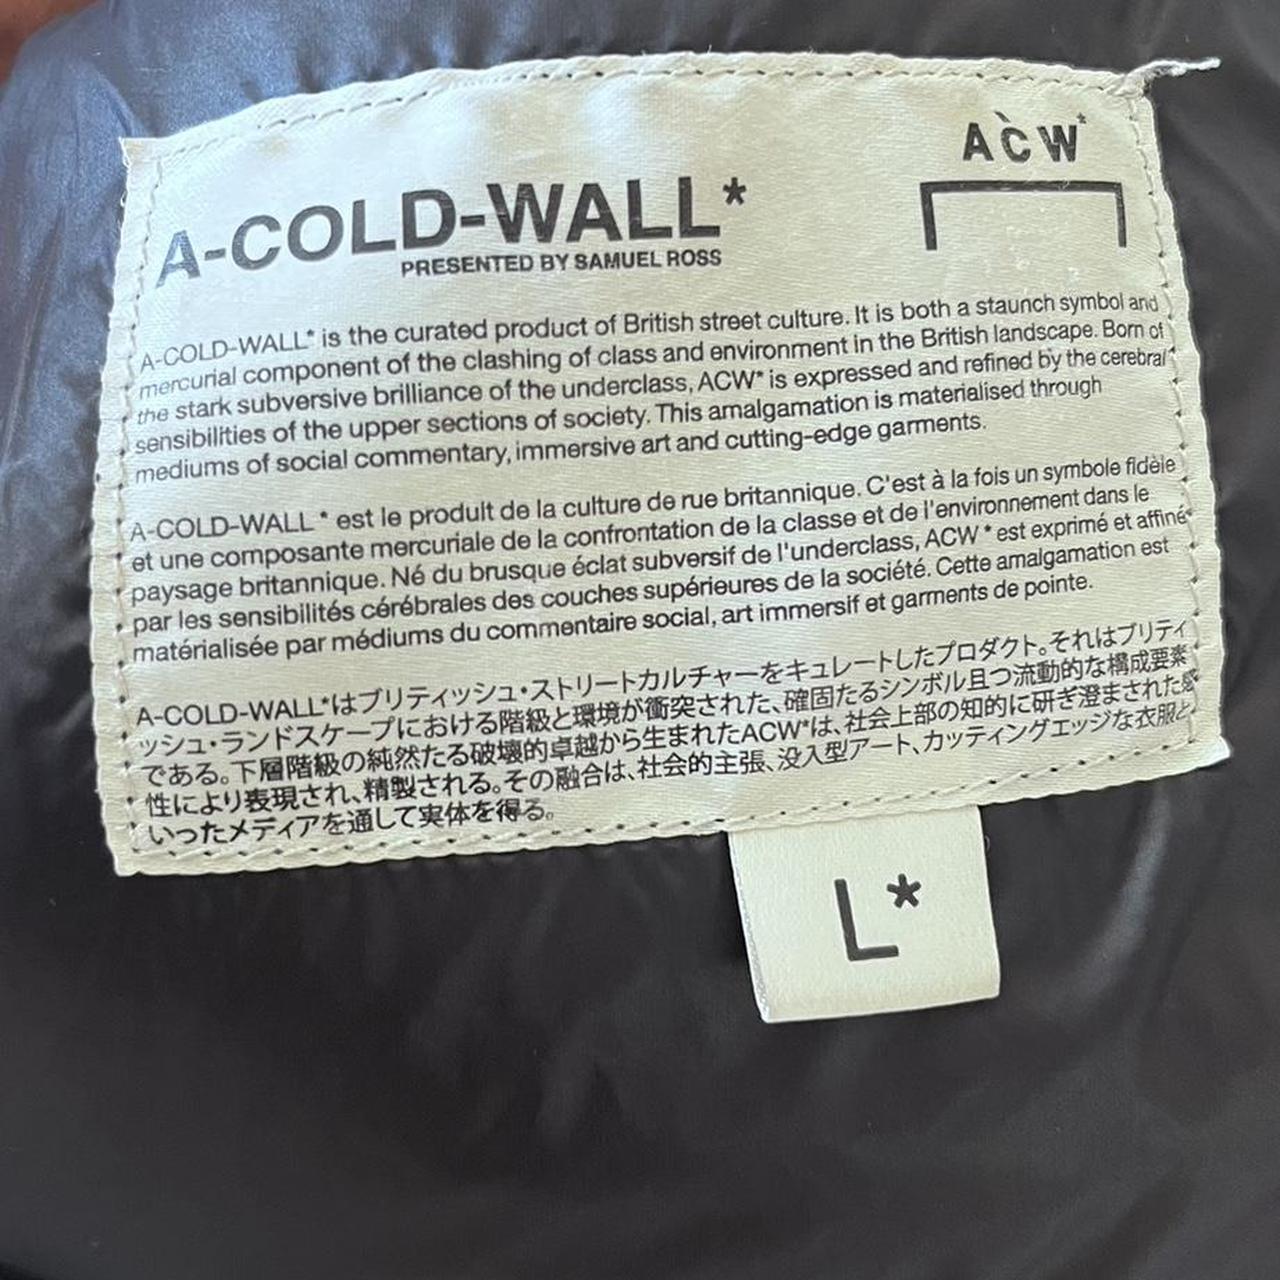 A-COLD-WALL Men's Black Coat (4)